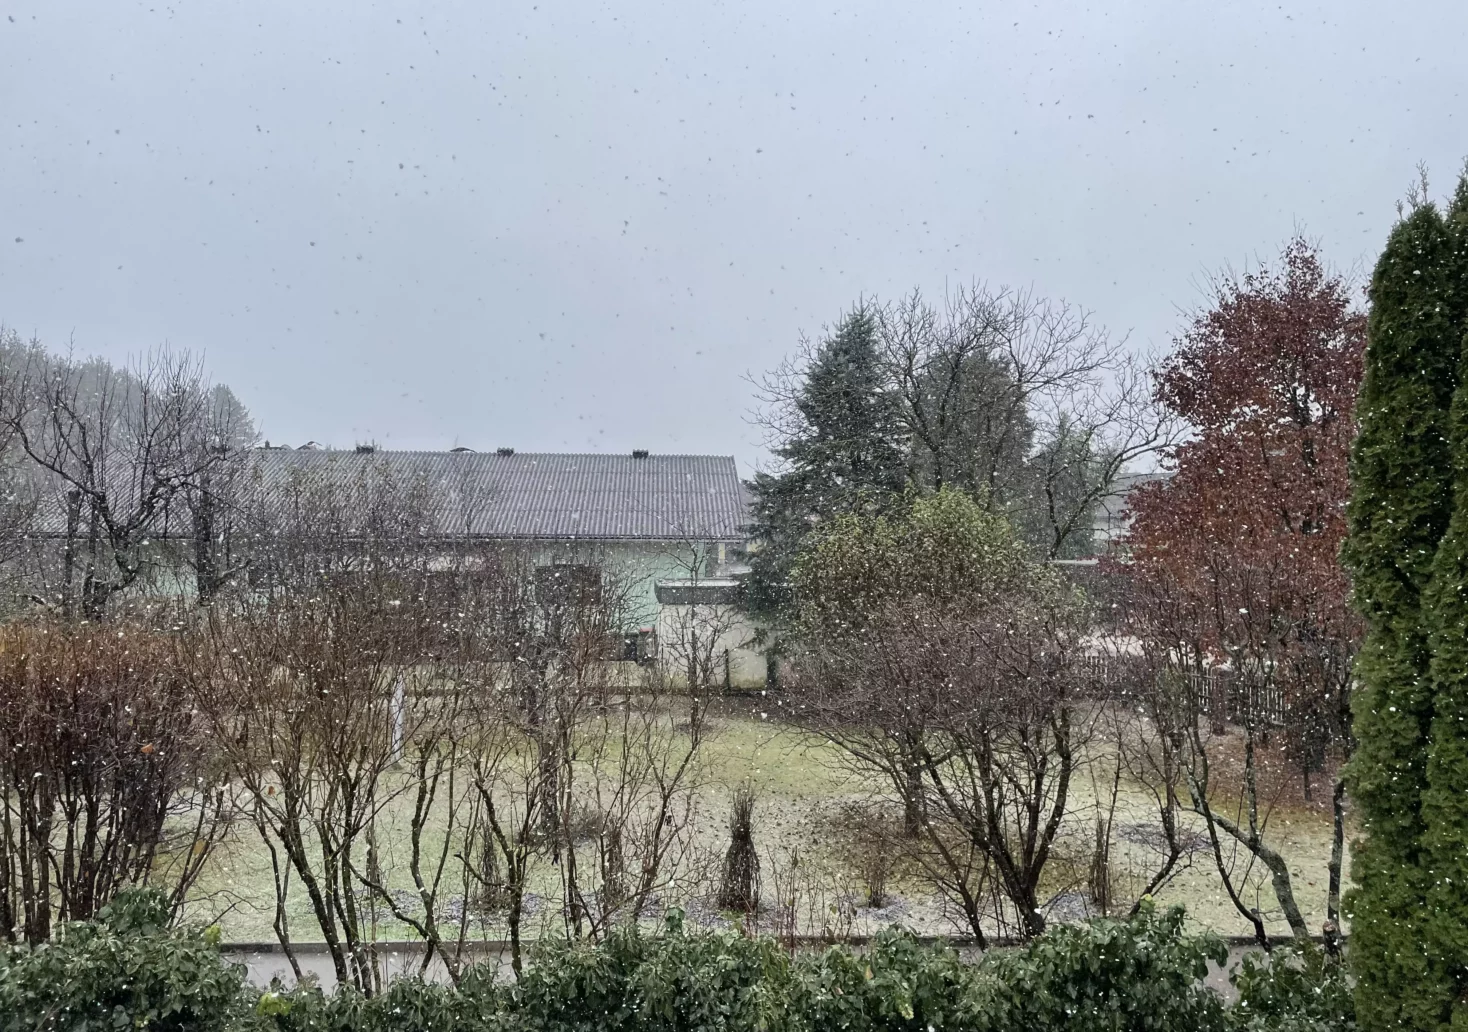 Regen lässt nach: Schneefall nimmt in Kärnten jetzt überhand